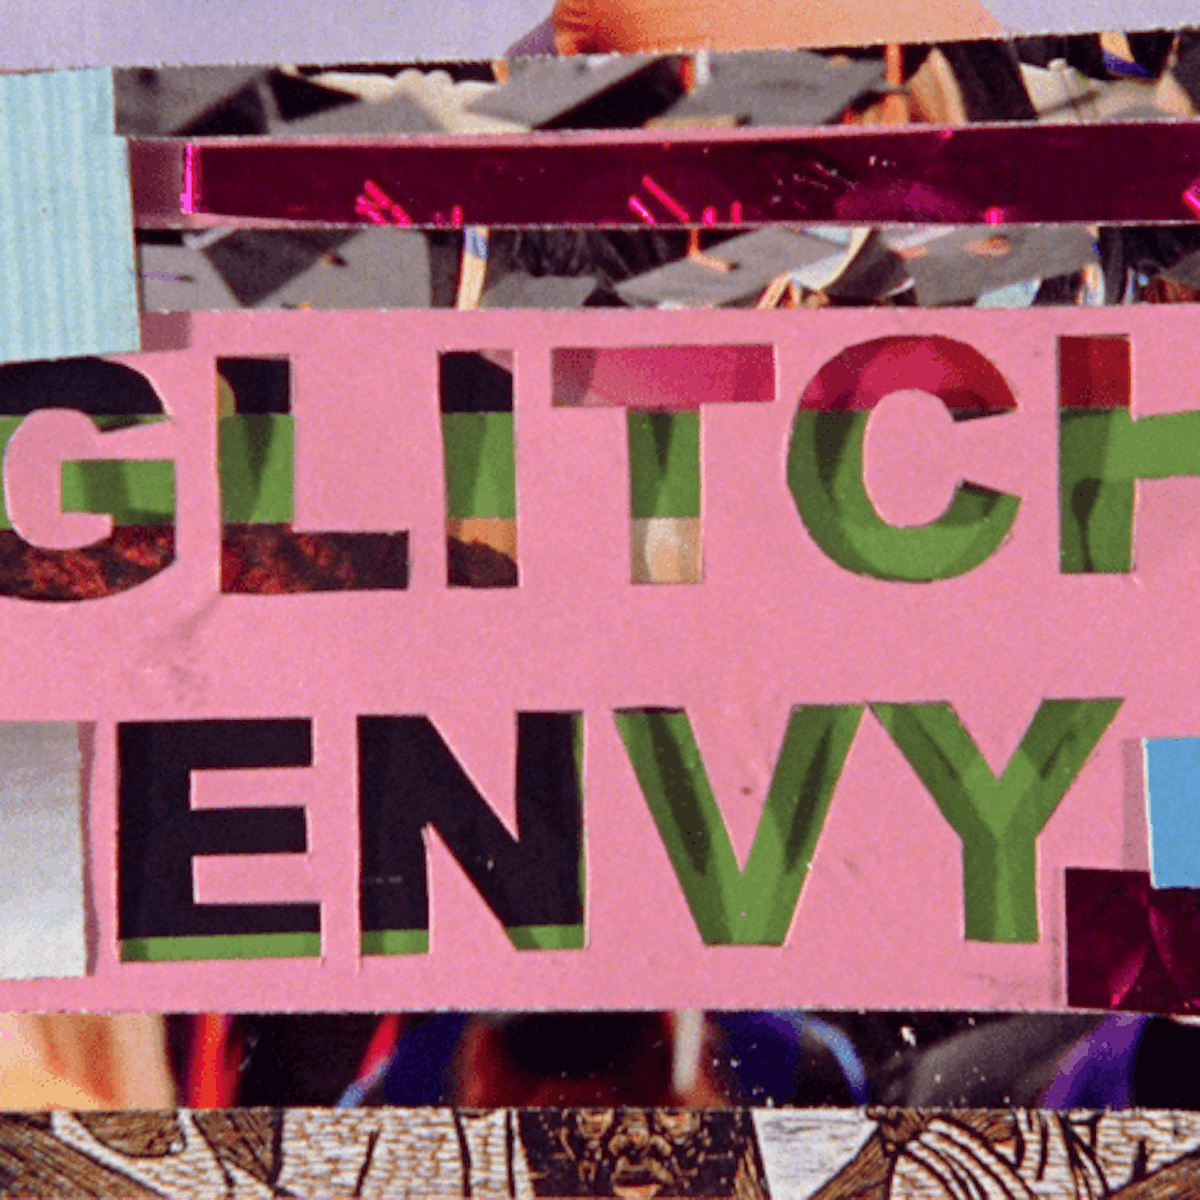 Glitchy digital collage reads "GLITCH ENVY"